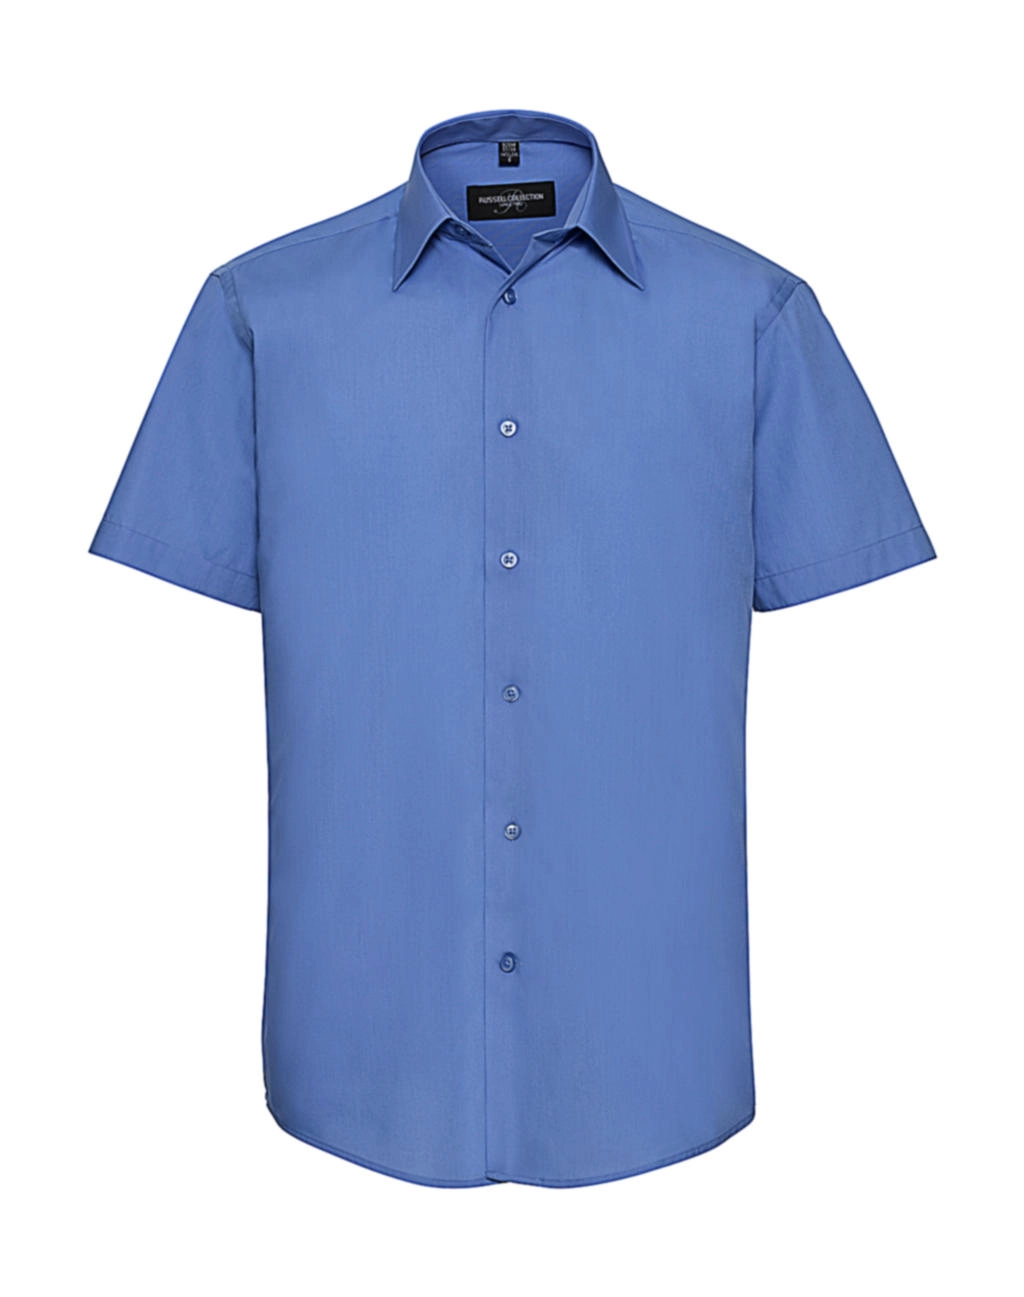 Tailored Poplin Shirt zum Besticken und Bedrucken in der Farbe Corporate Blue mit Ihren Logo, Schriftzug oder Motiv.